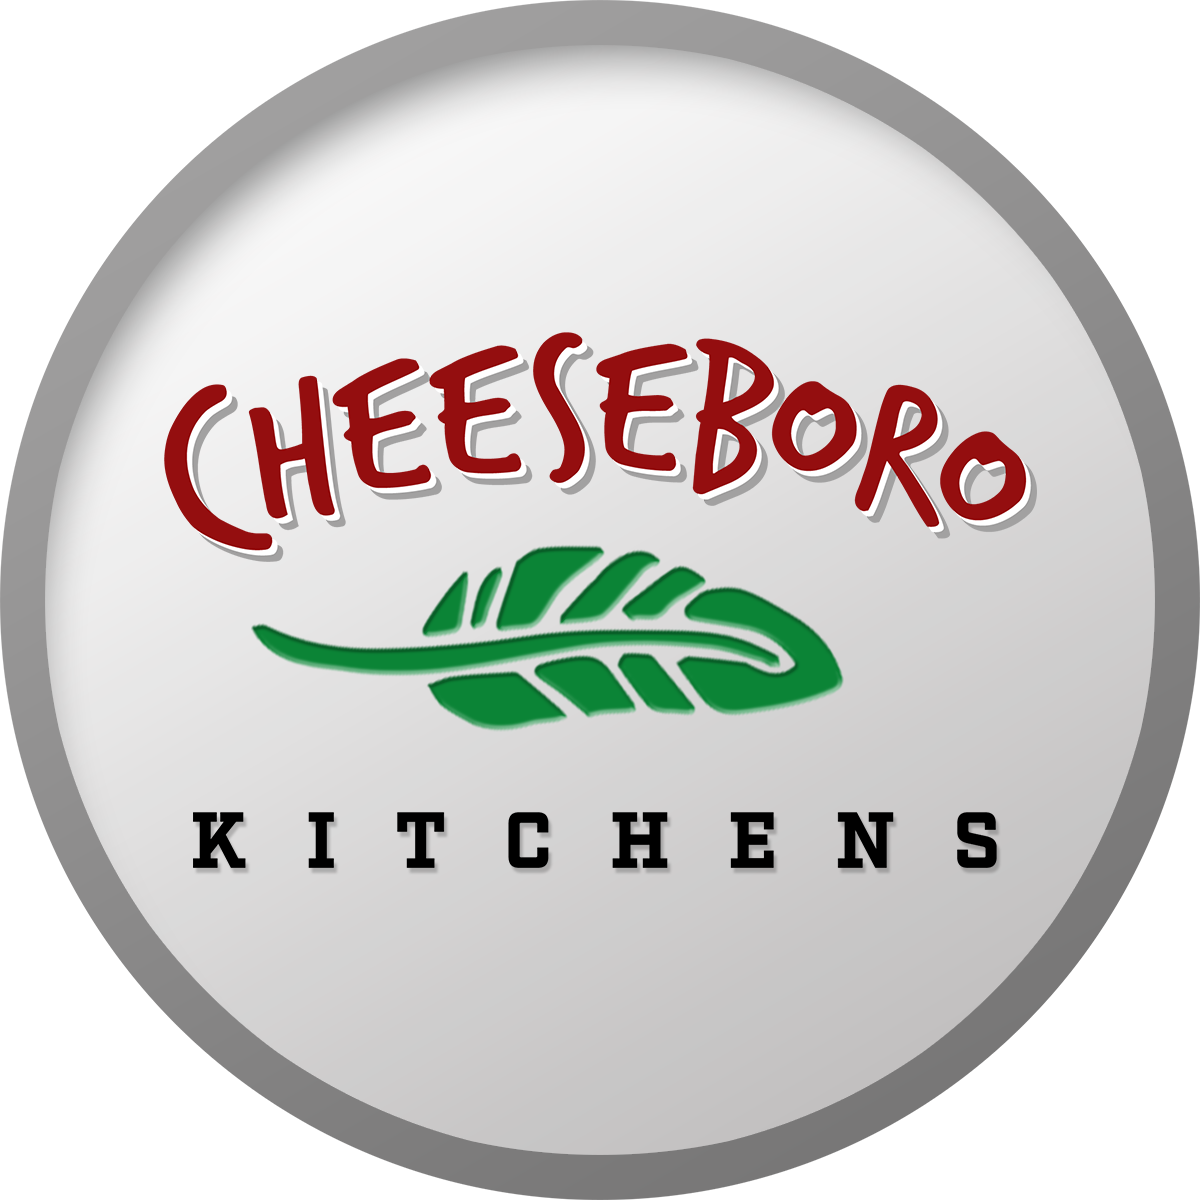 Cheeseboro Kitchens